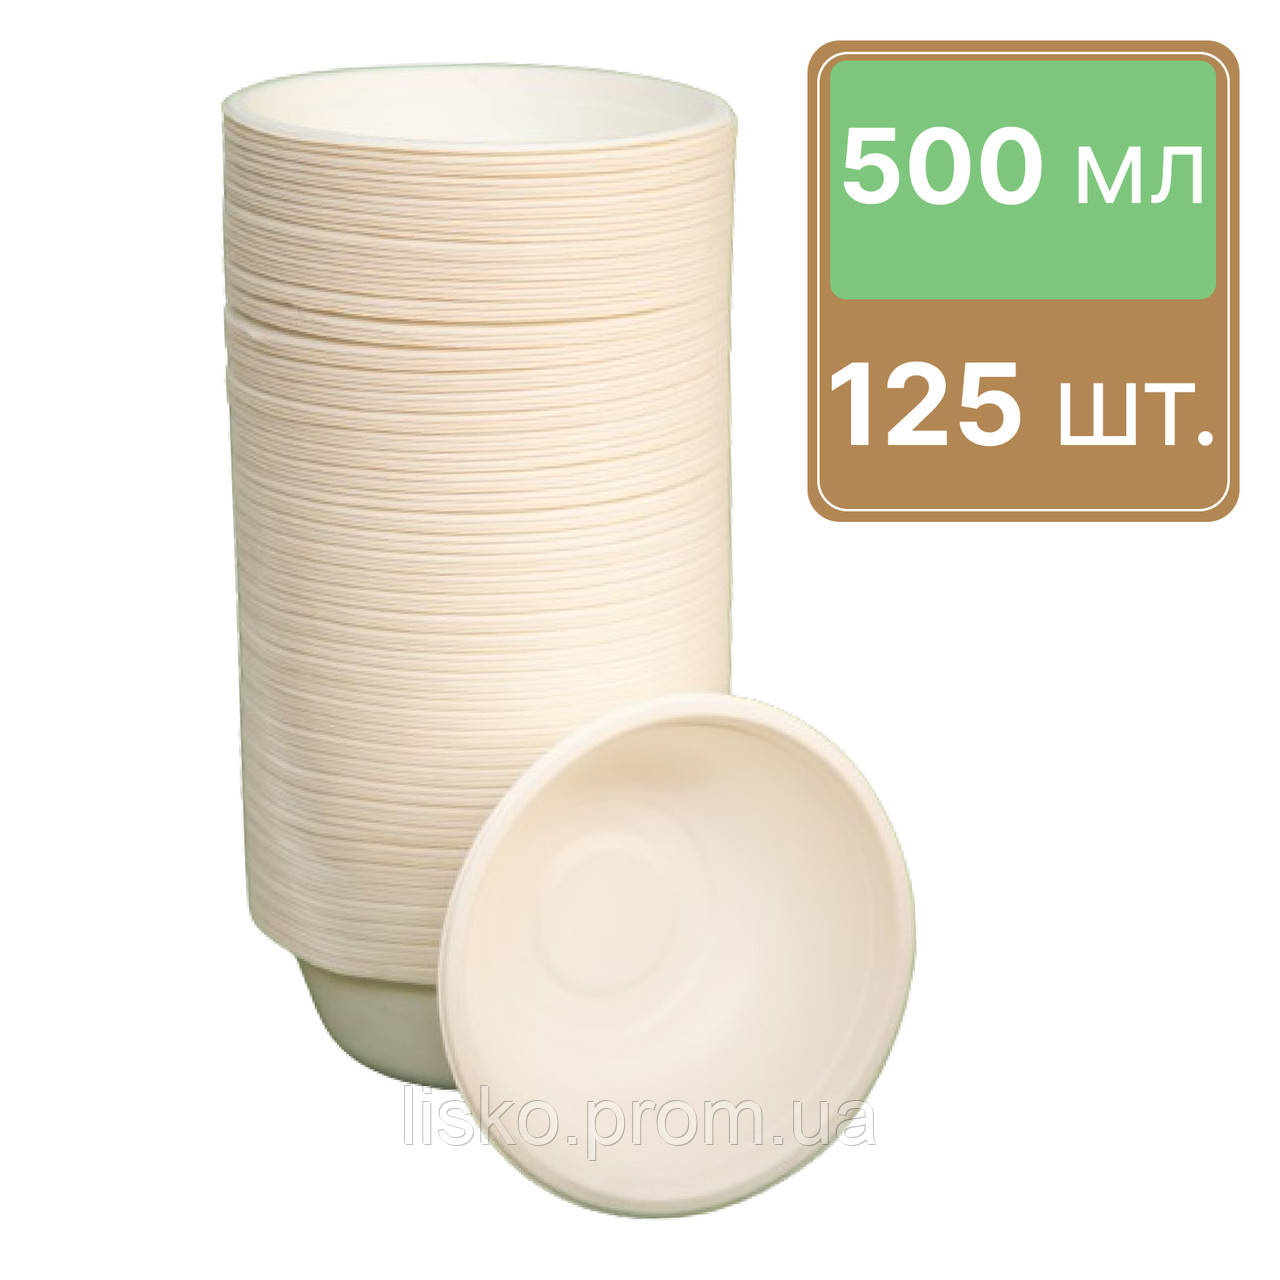 Глибокі тарілки одноразові з цукрової тростини 500 мл 125 шт LISKO ЕКО (00000000137)